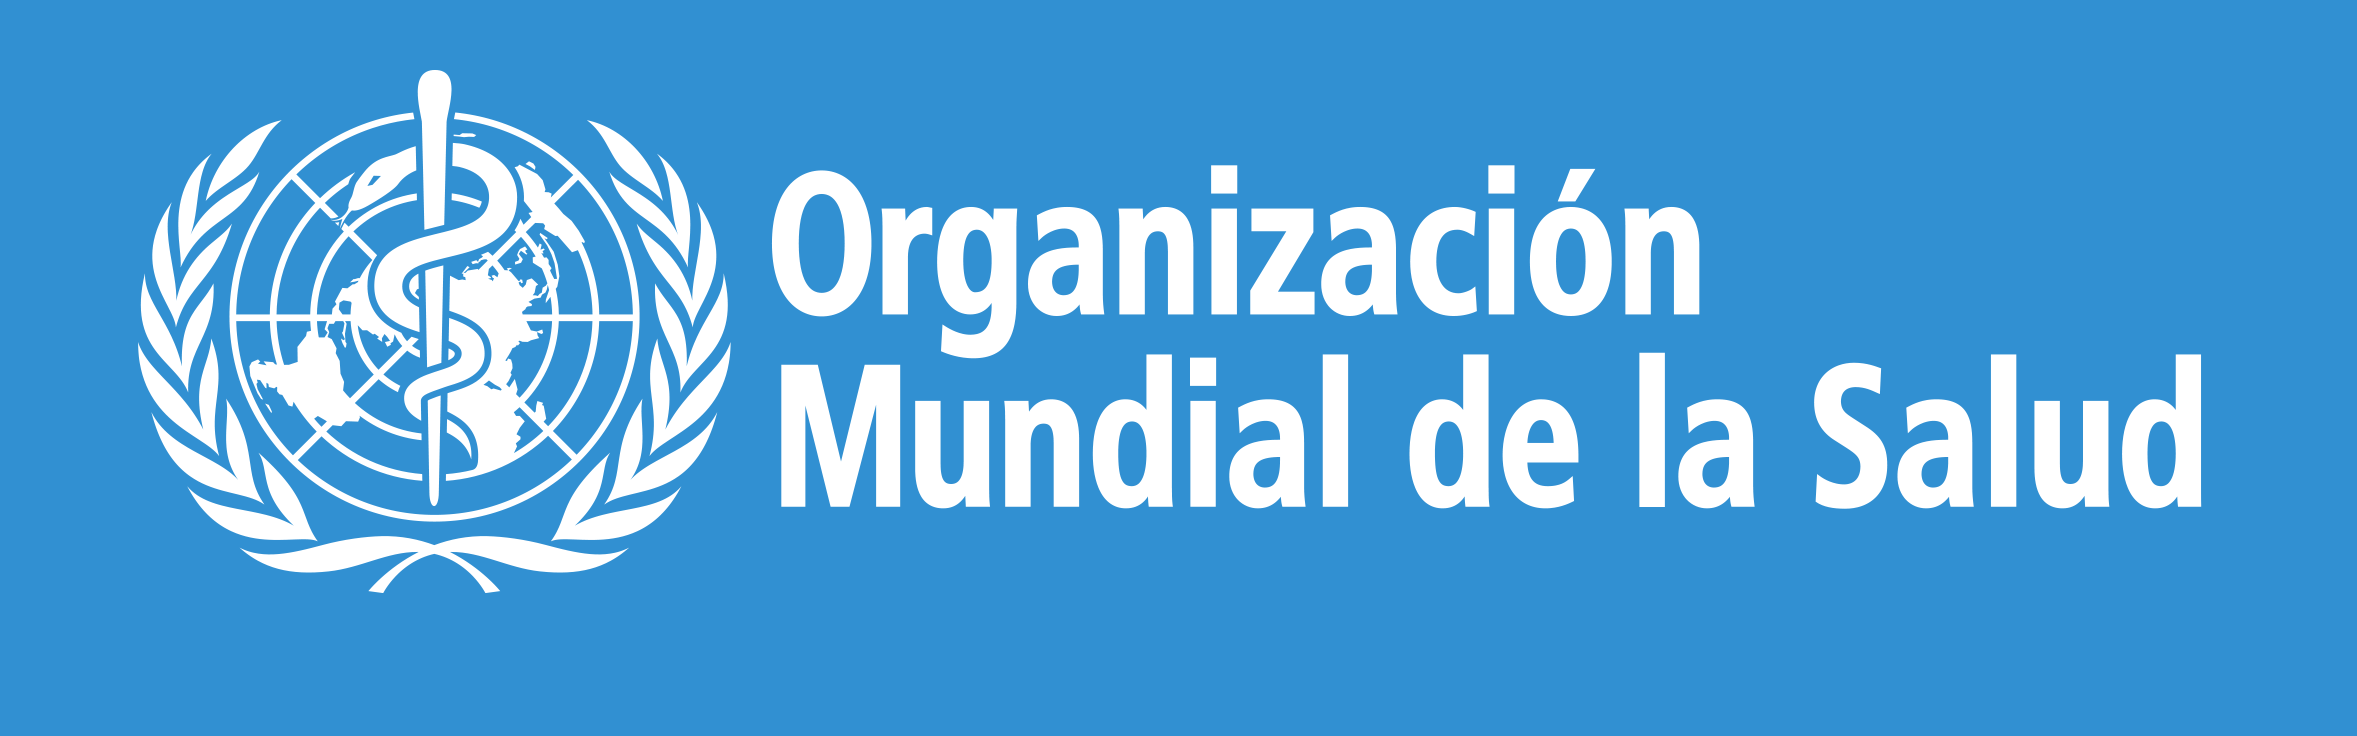 Organización Mundial de la Salud - Logo